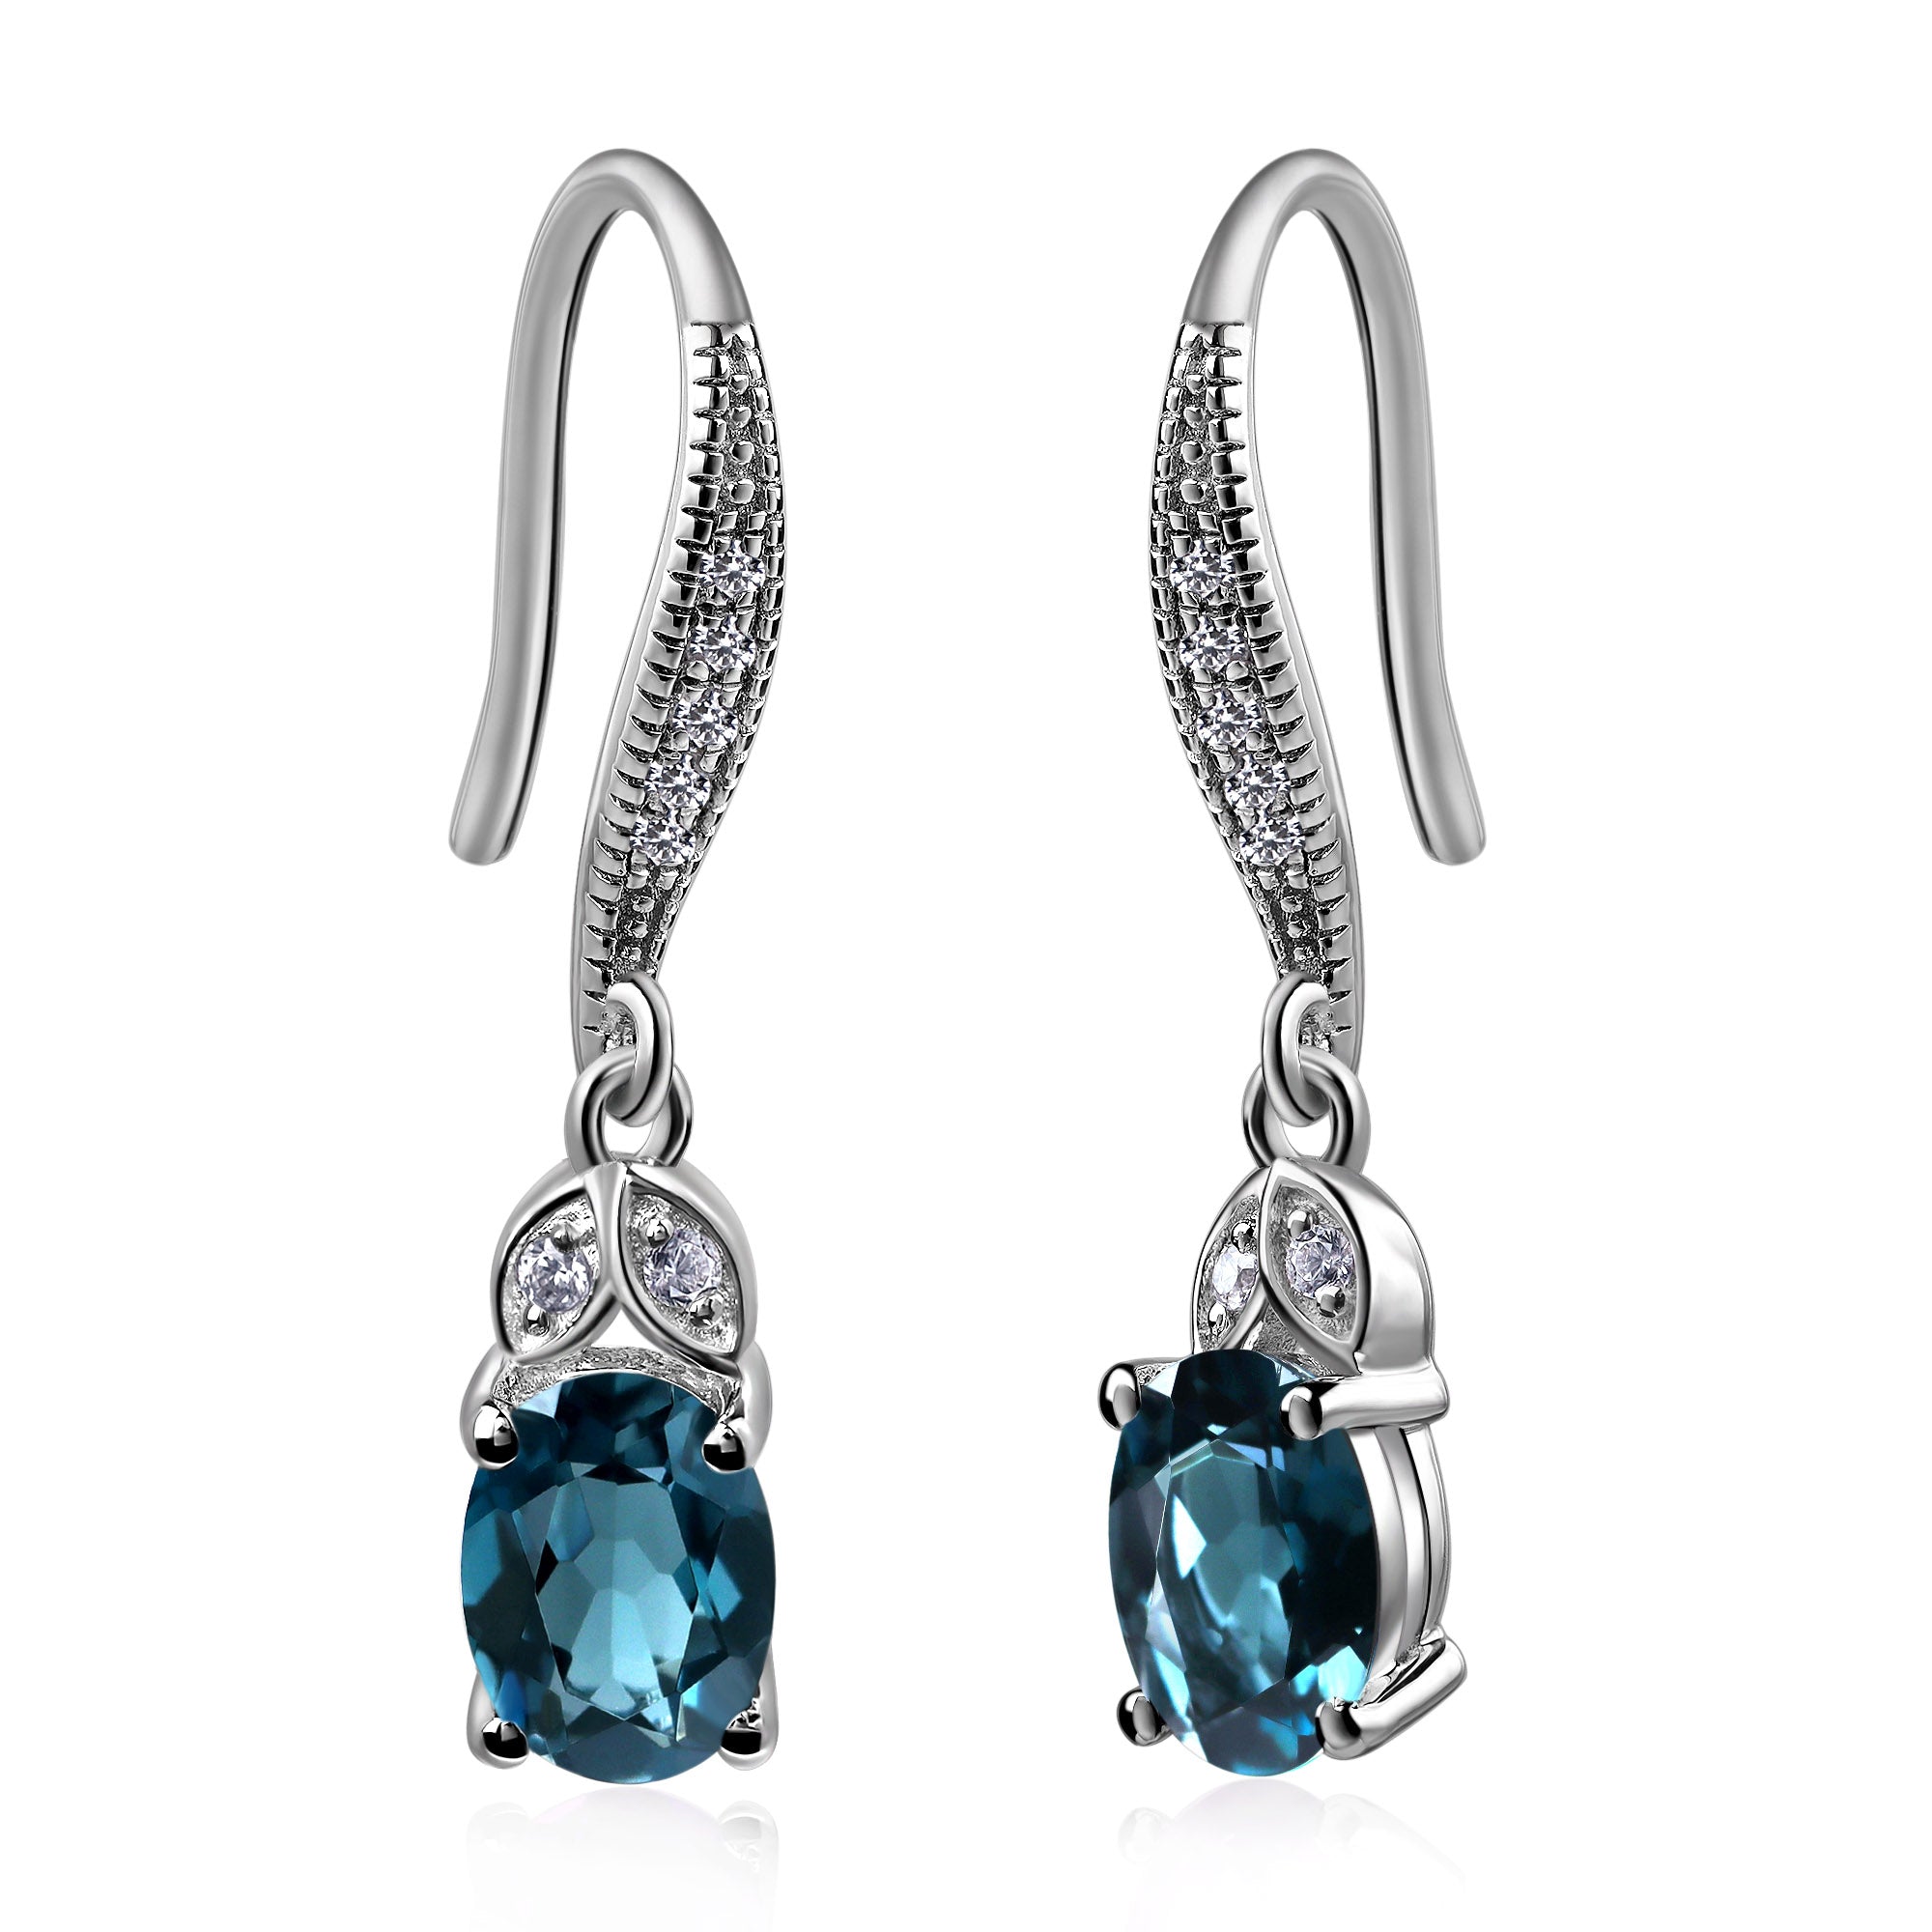 Oval London Blue Topaz Dangling Earrings